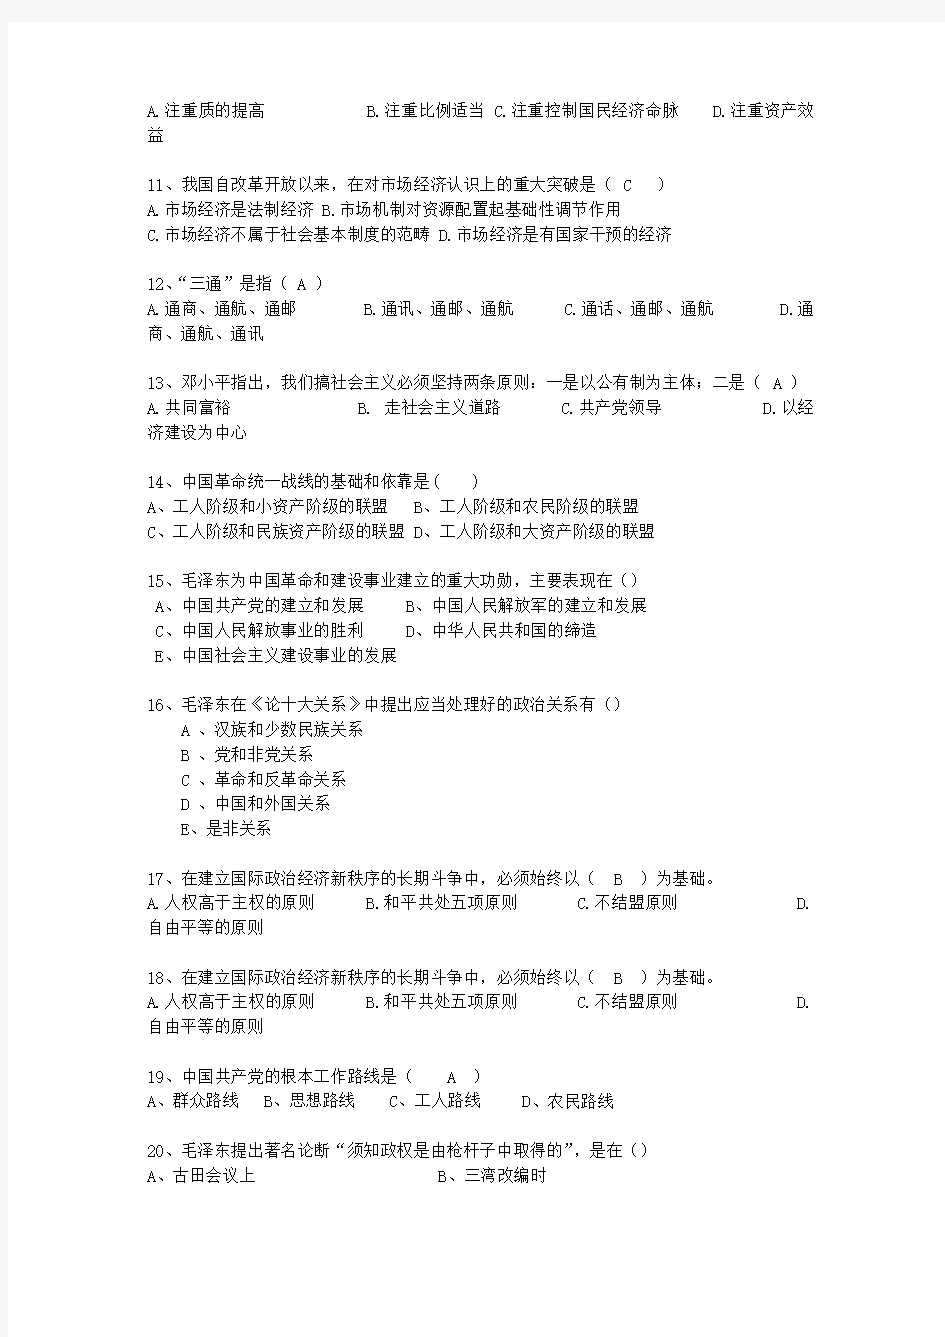 2011香港特别行政区毛概复习资料考试技巧、答题原则